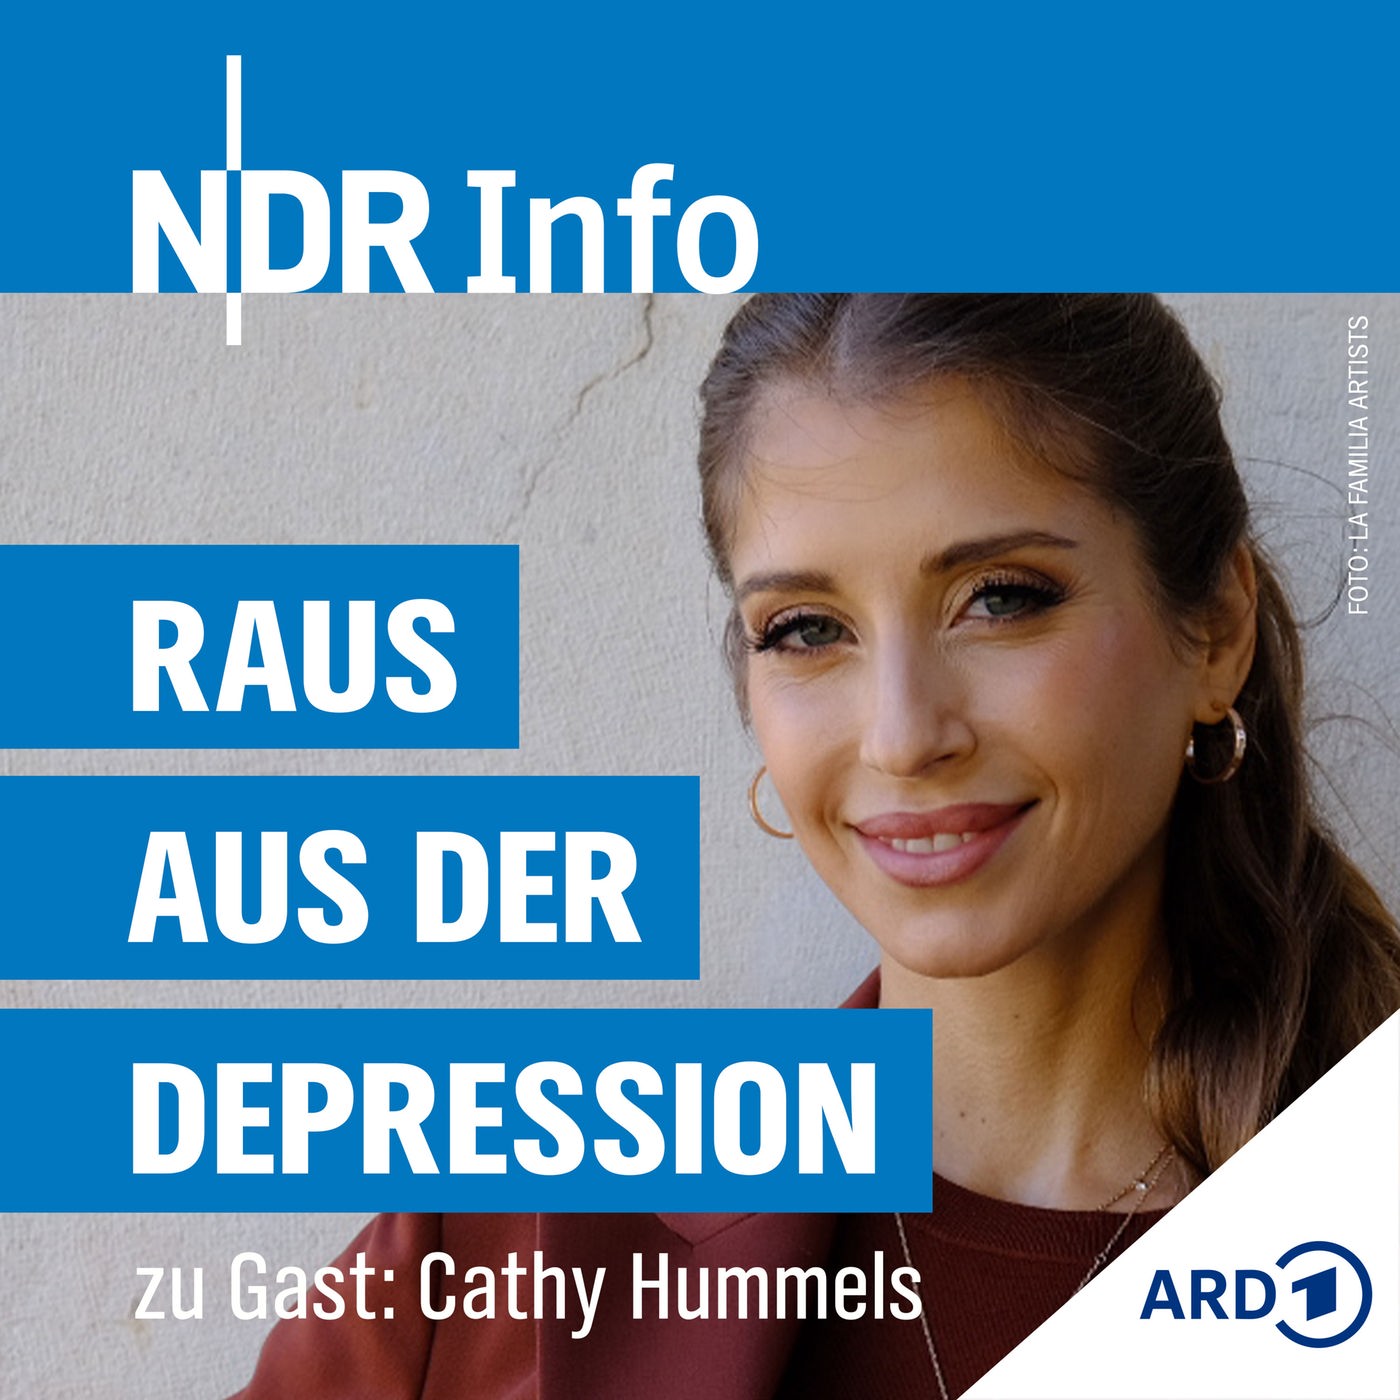 Cathy Hummels – Ist eine Depression erblich?